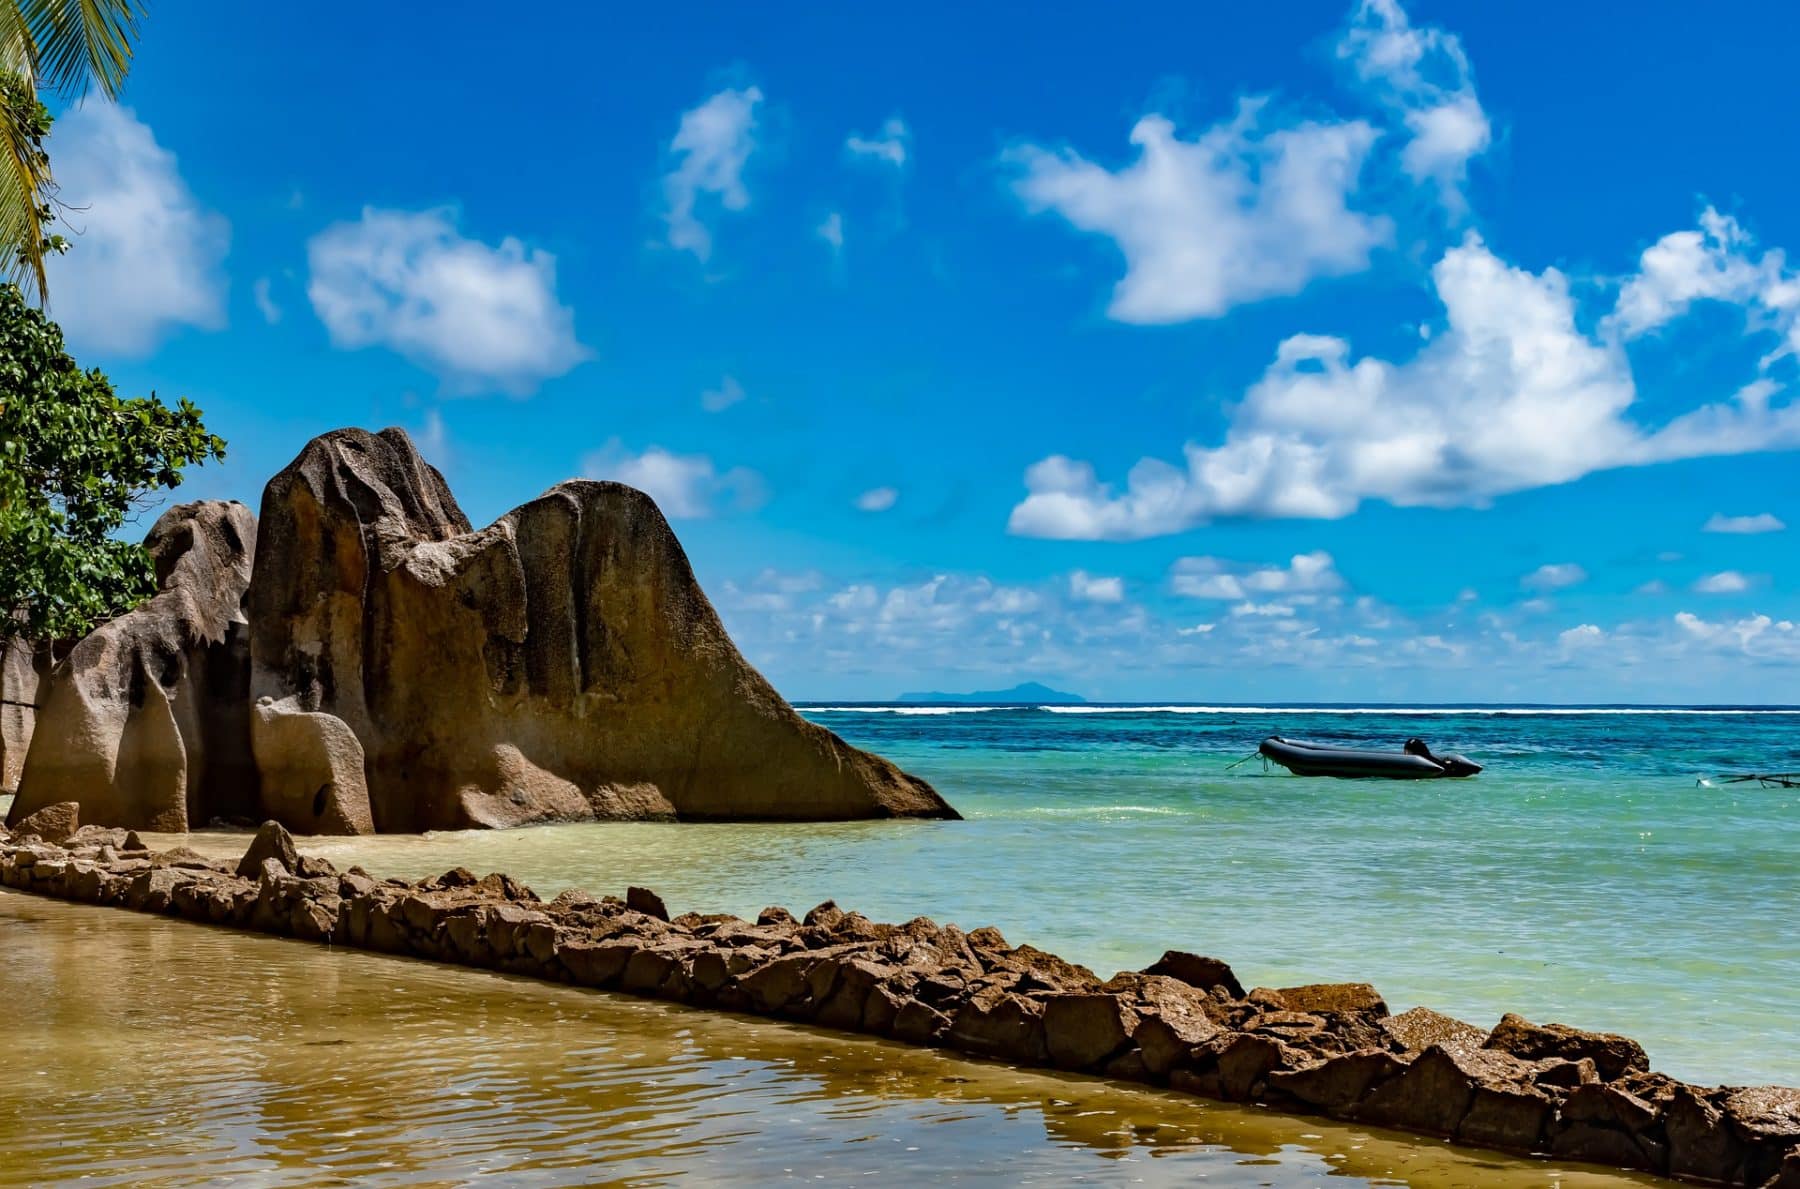 Ein malerischer tropischer Strand mit großen Granitfelsen am Ufer, klarem türkisfarbenem Wasser und einem blauen Himmel mit flauschigen Wolken. Eine Segelyacht schwimmt nahe dem Horizont.